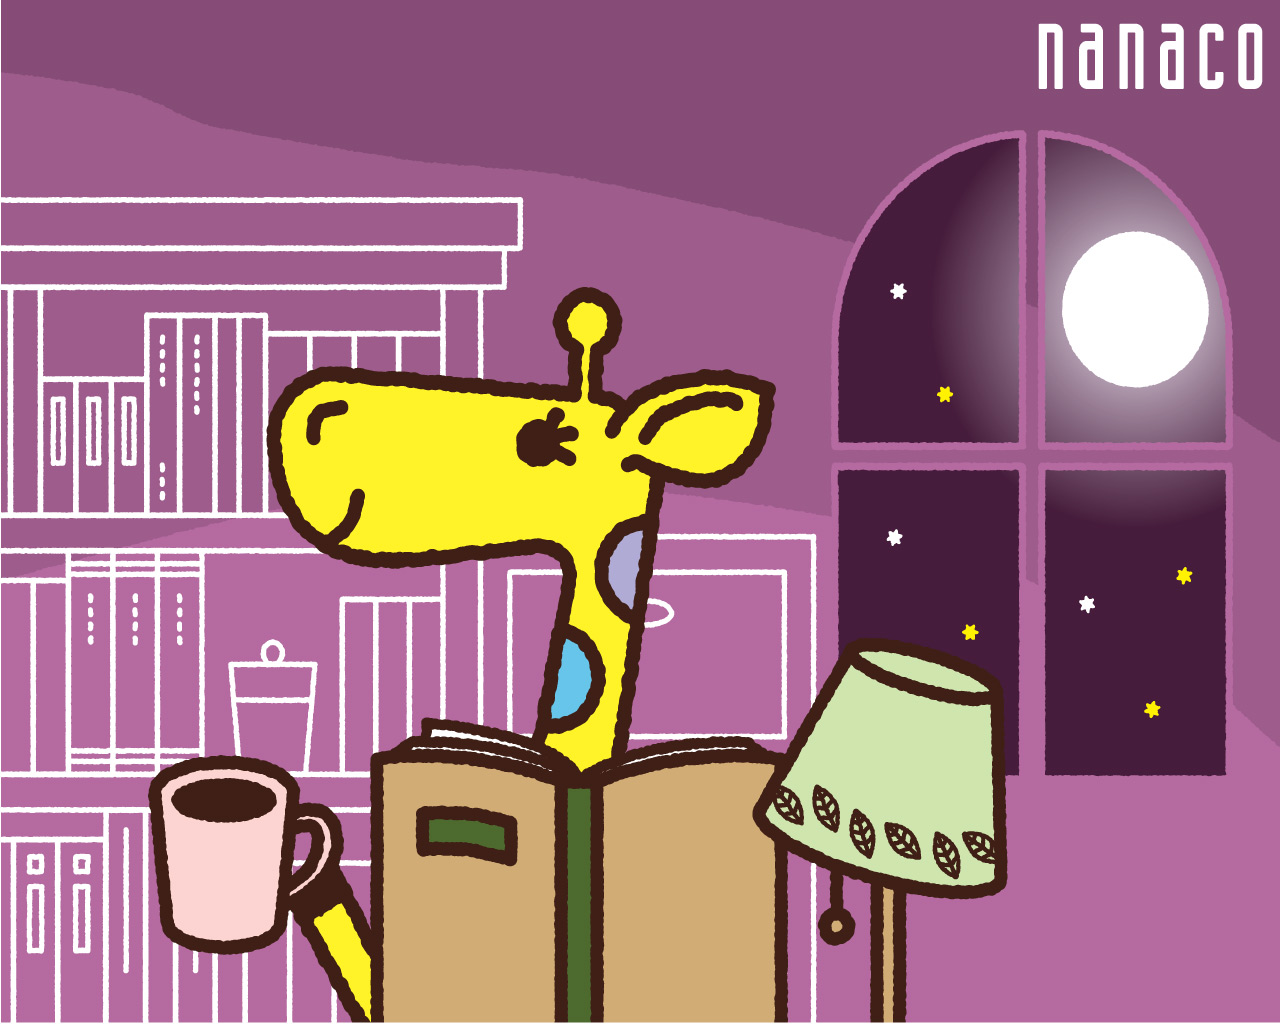 電子マネー Nanaco 公式サイト Nanacoお楽しみコンテンツ ナナコ壁紙ダウンロード